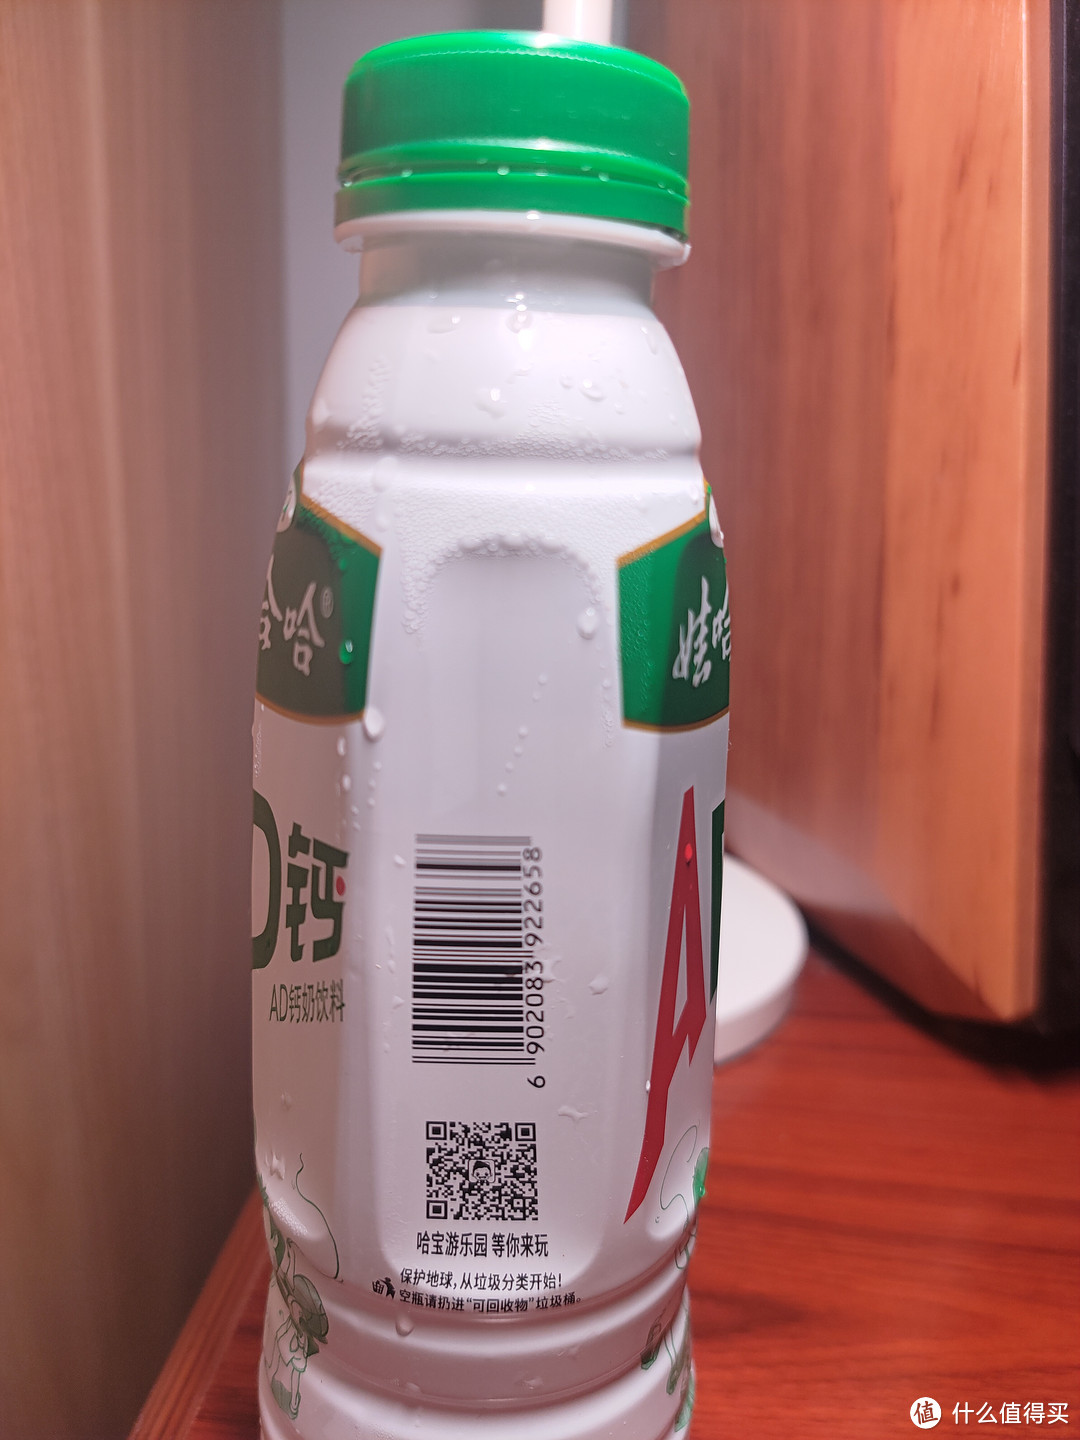 瓶装AD钙奶，你见过吗？